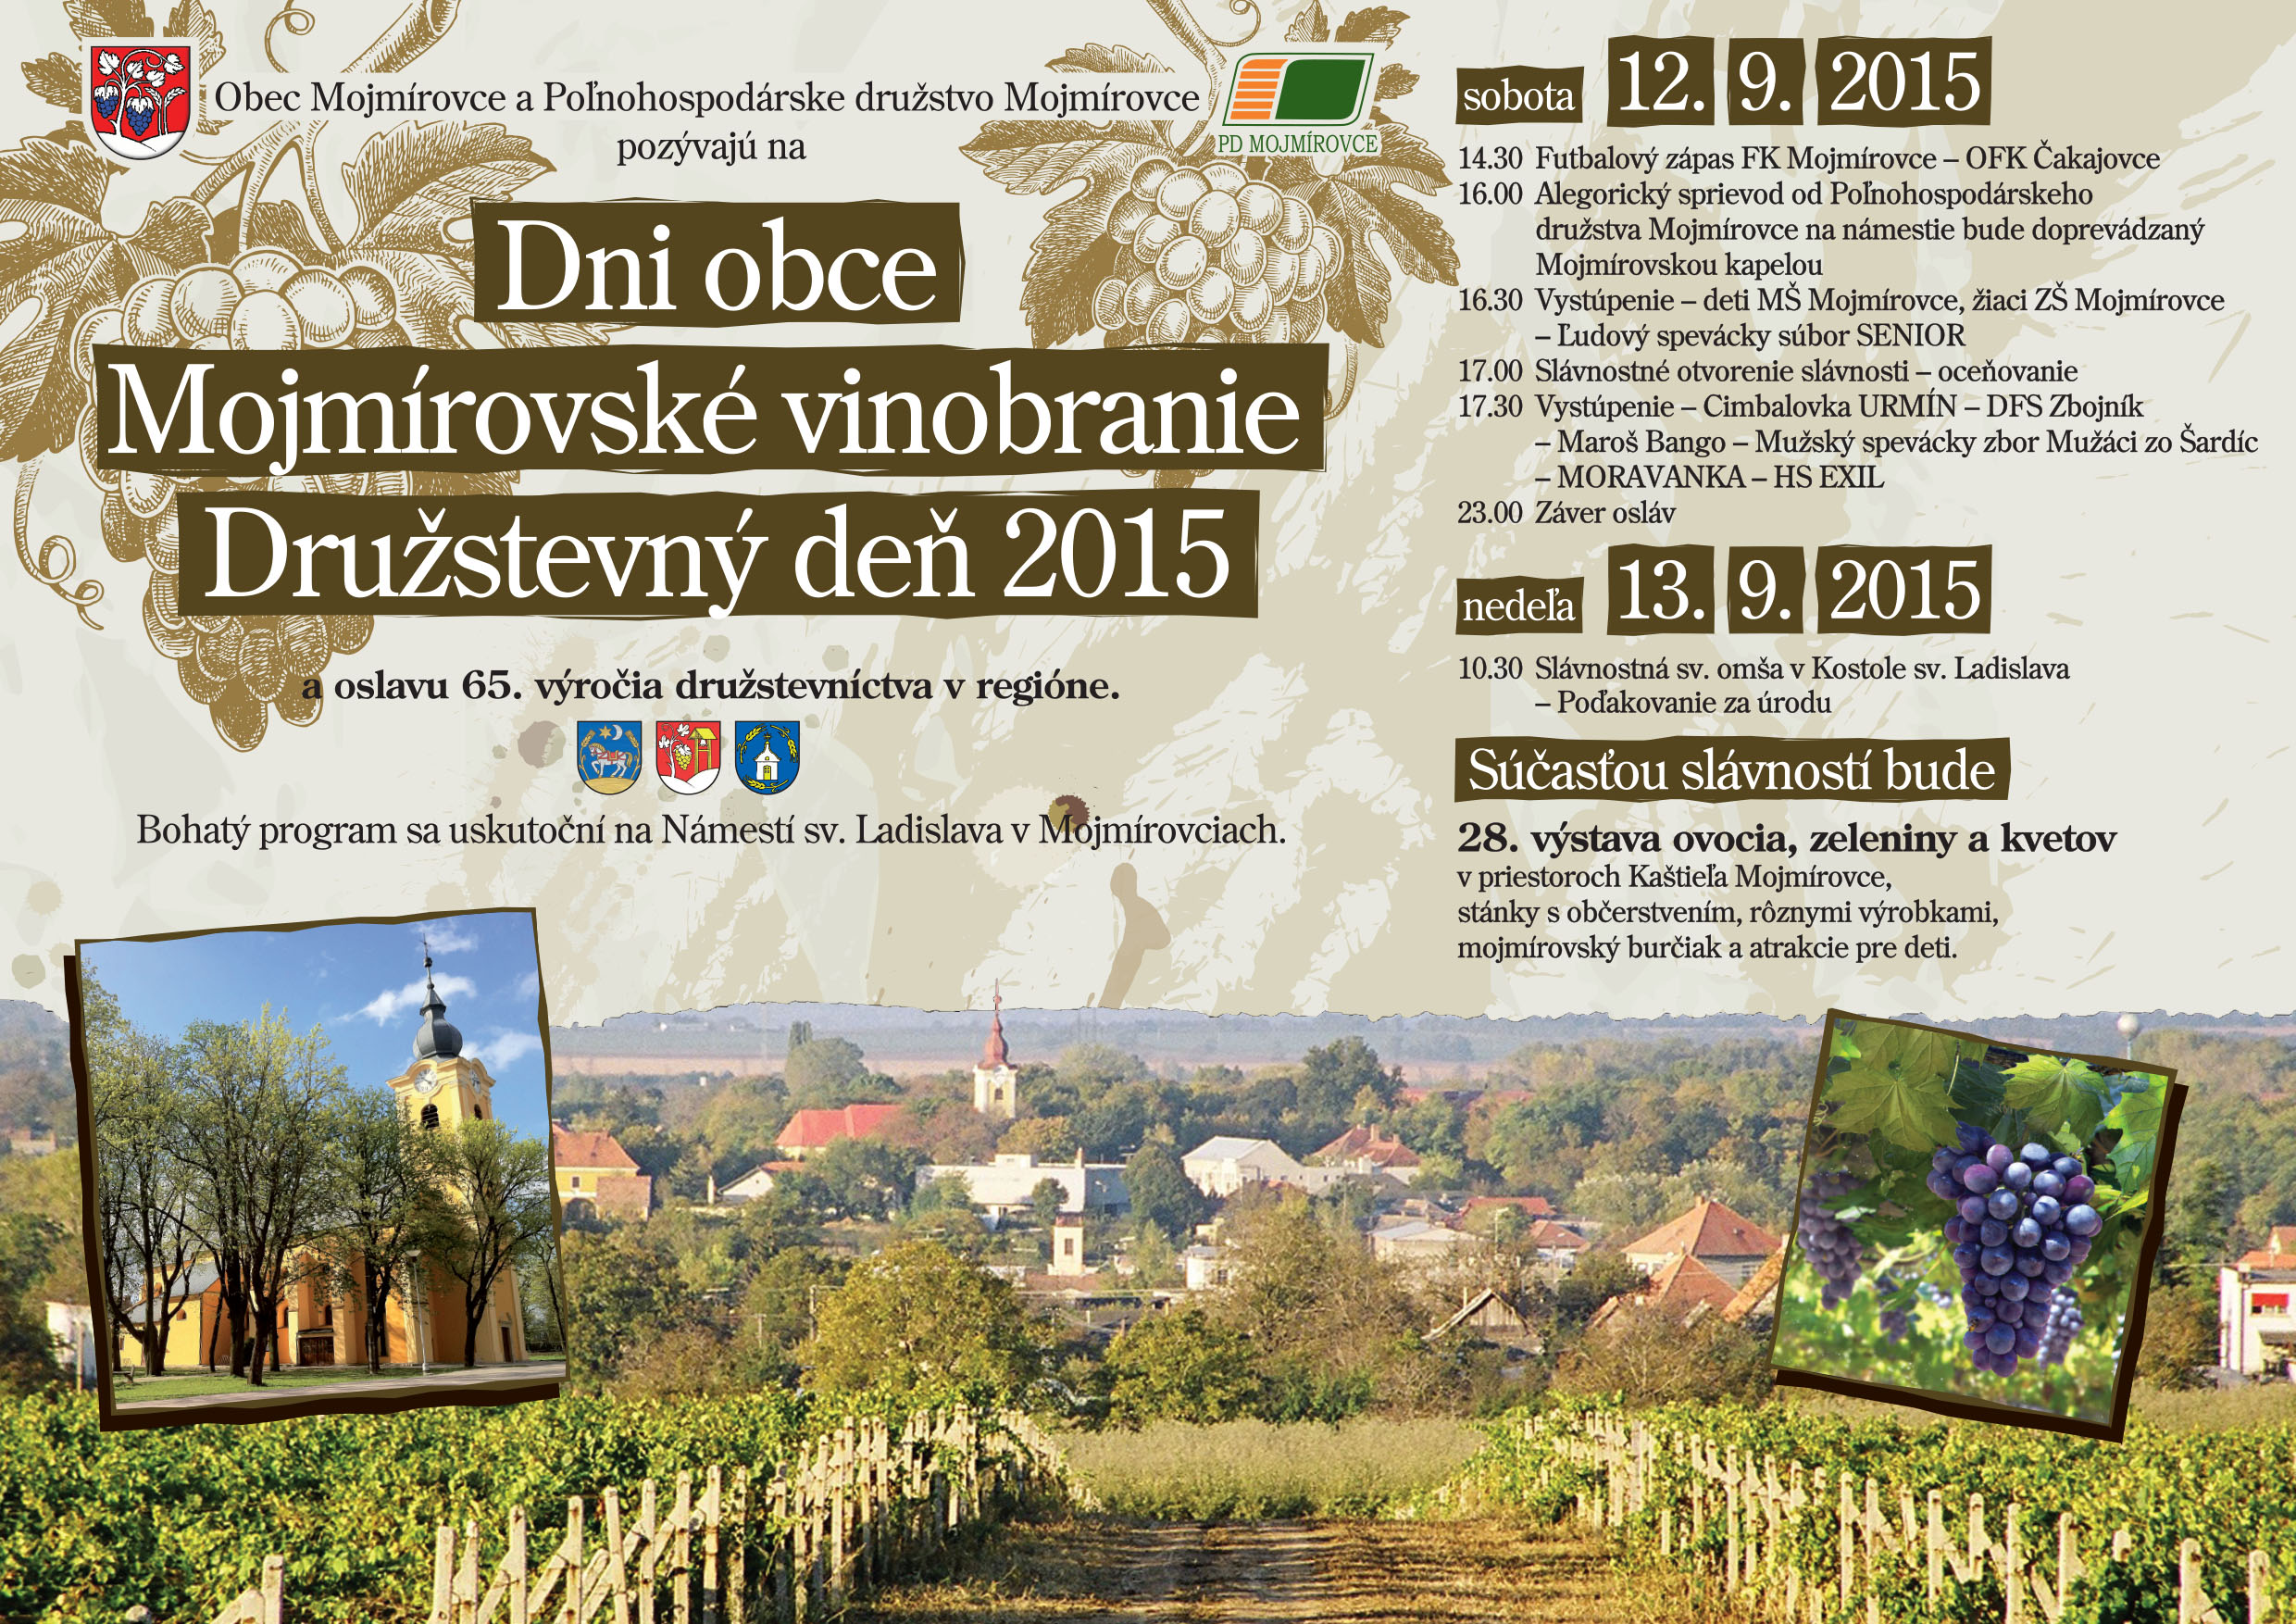 Dni obce Mojmírovce - Vinobranie - Družstevný deň 2015